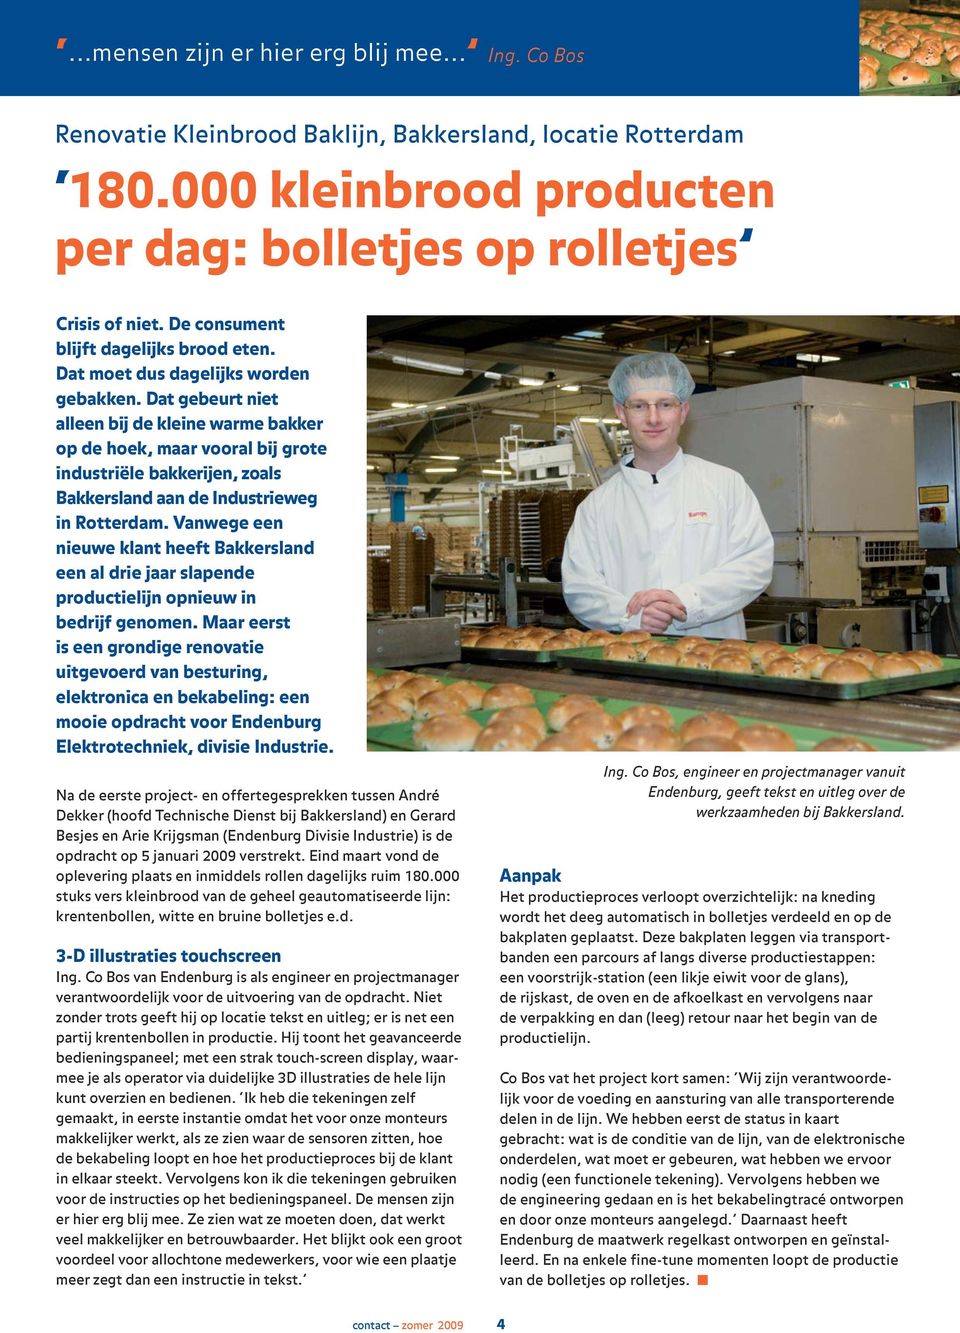 Dat gebeurt niet alleen bij de kleine warme bakker op de hoek, maar vooral bij grote industriële bakkerijen, zoals Bakkersland aan de Industrieweg in Rotterdam.